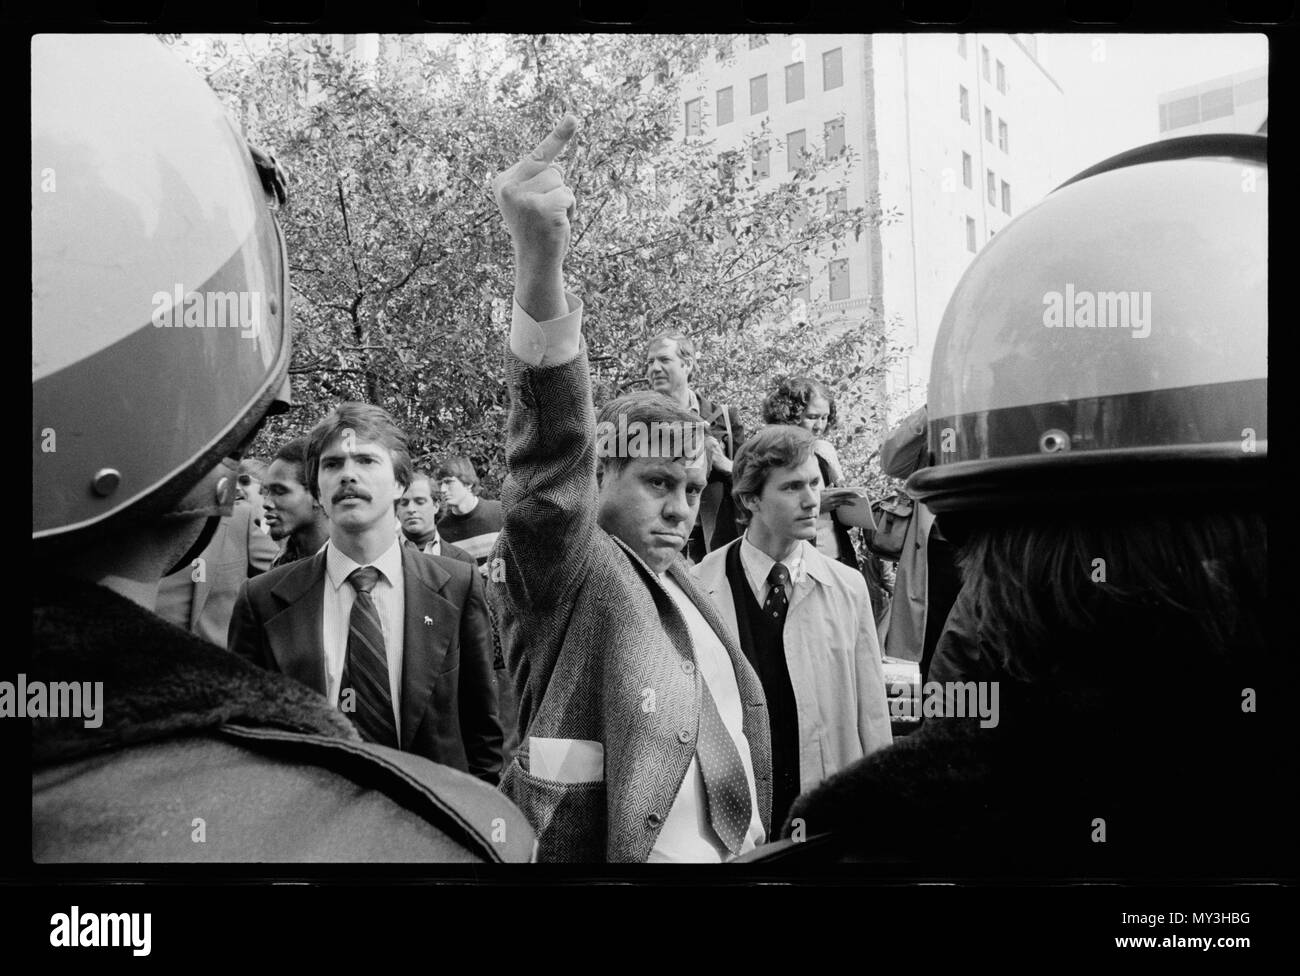 Un manifestant utilise son doigt moyen pour exprimer la colère et la frustration face à la crise des otages en Iran, Washington, DC, 09/11/1979. Photo par Marion S. Trikosko. Banque D'Images